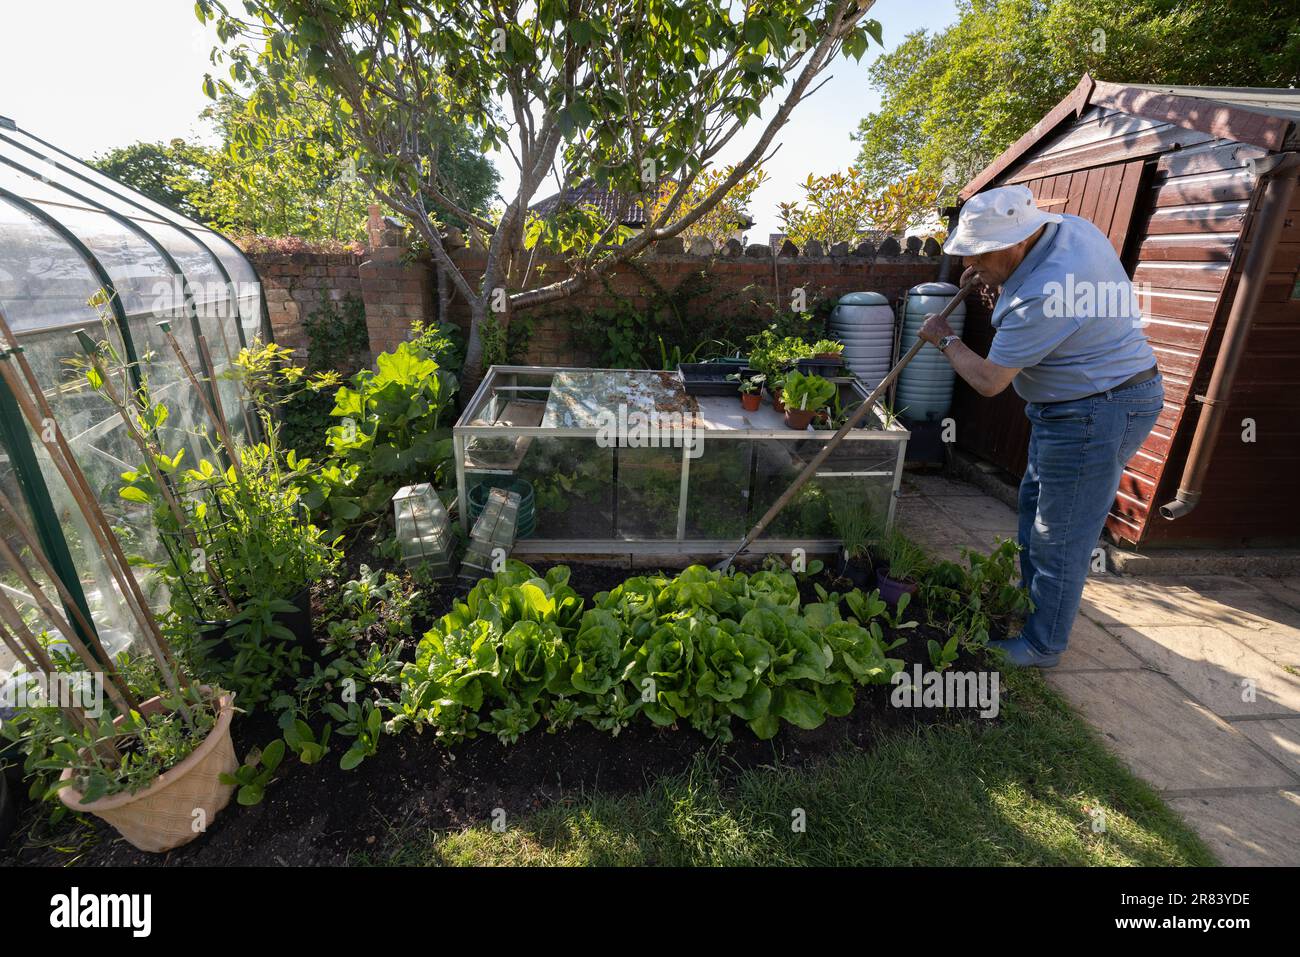 Homme âgé de quatre-vingt ans cultivant des légumes, y compris des laitues, dans son jardin arrière, Somerset, Angleterre, Royaume-Uni Banque D'Images